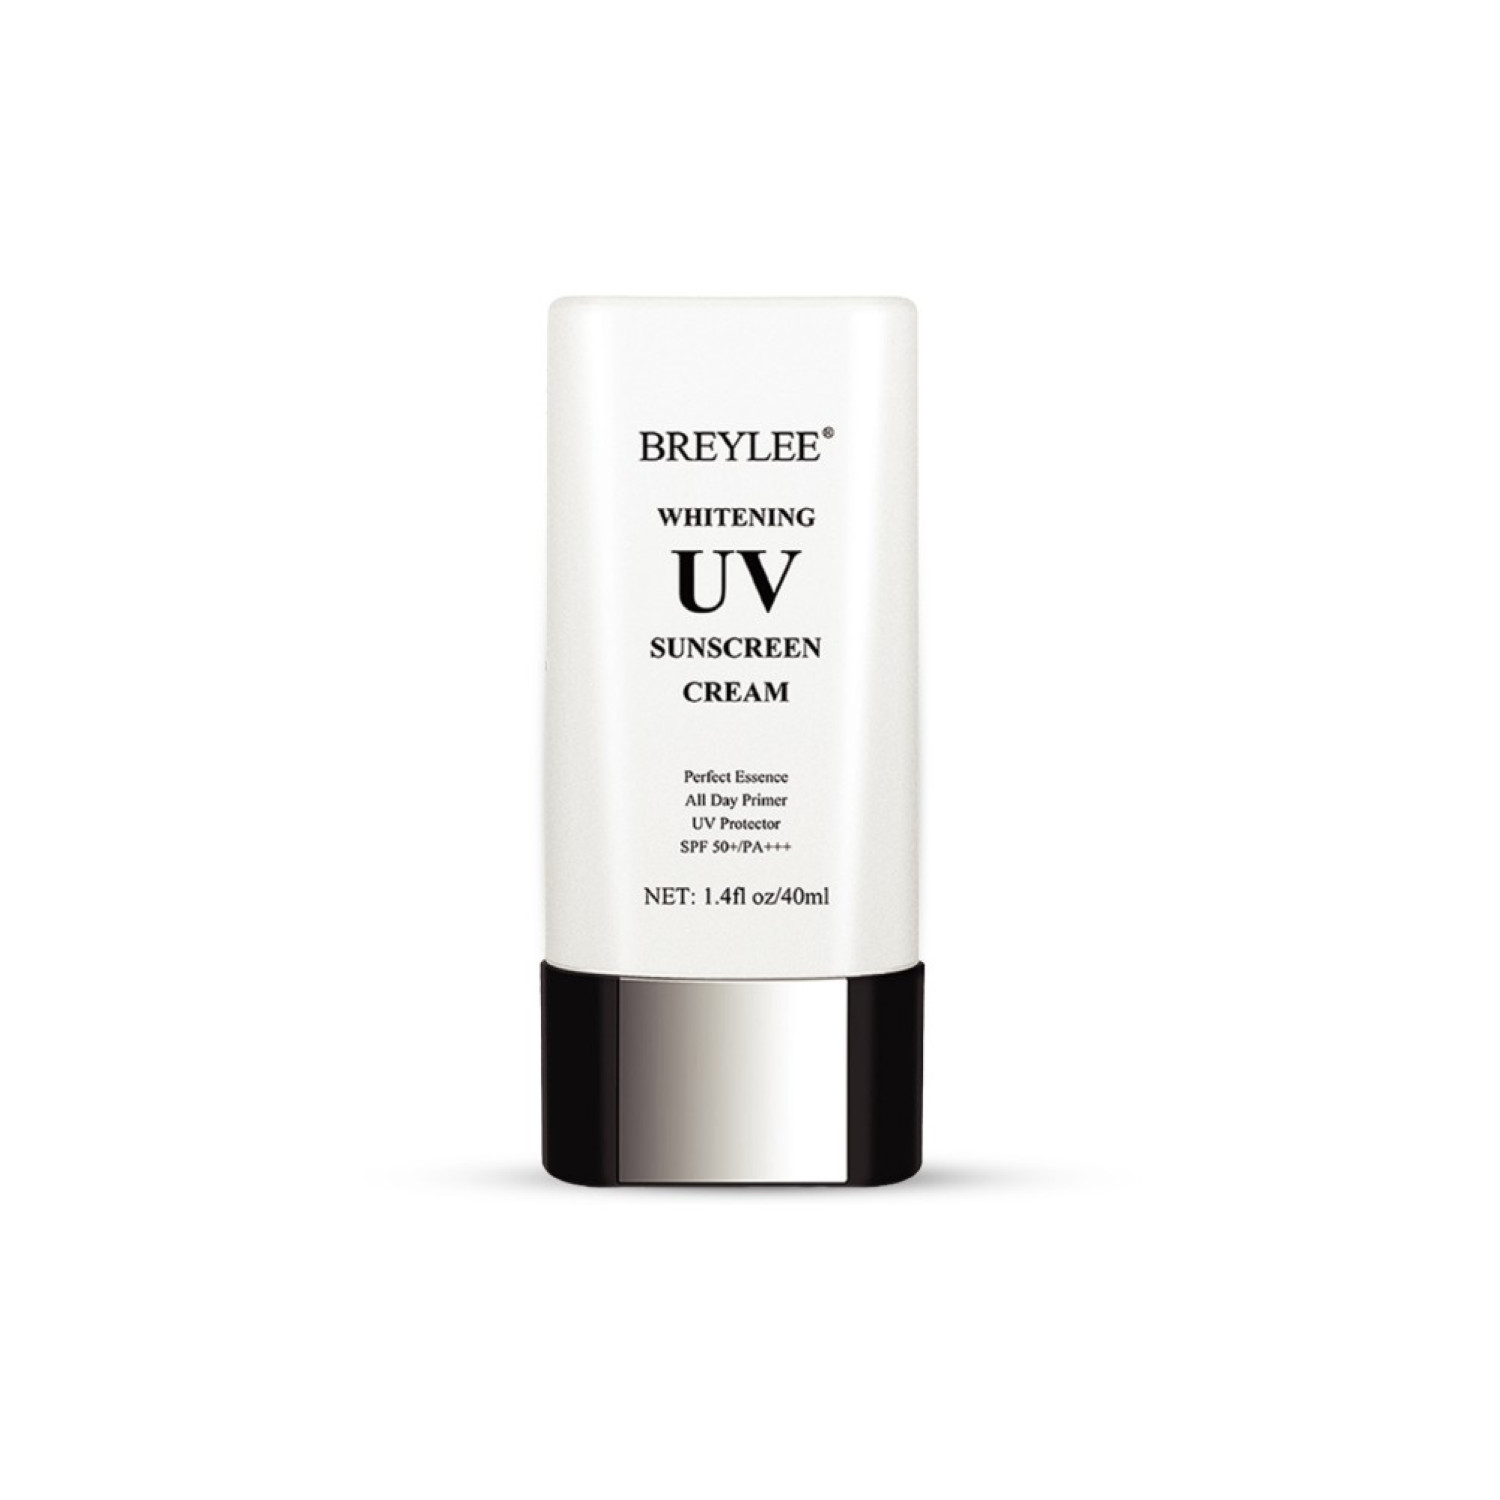 Breylee Whitening UV Sunscreen Cream 